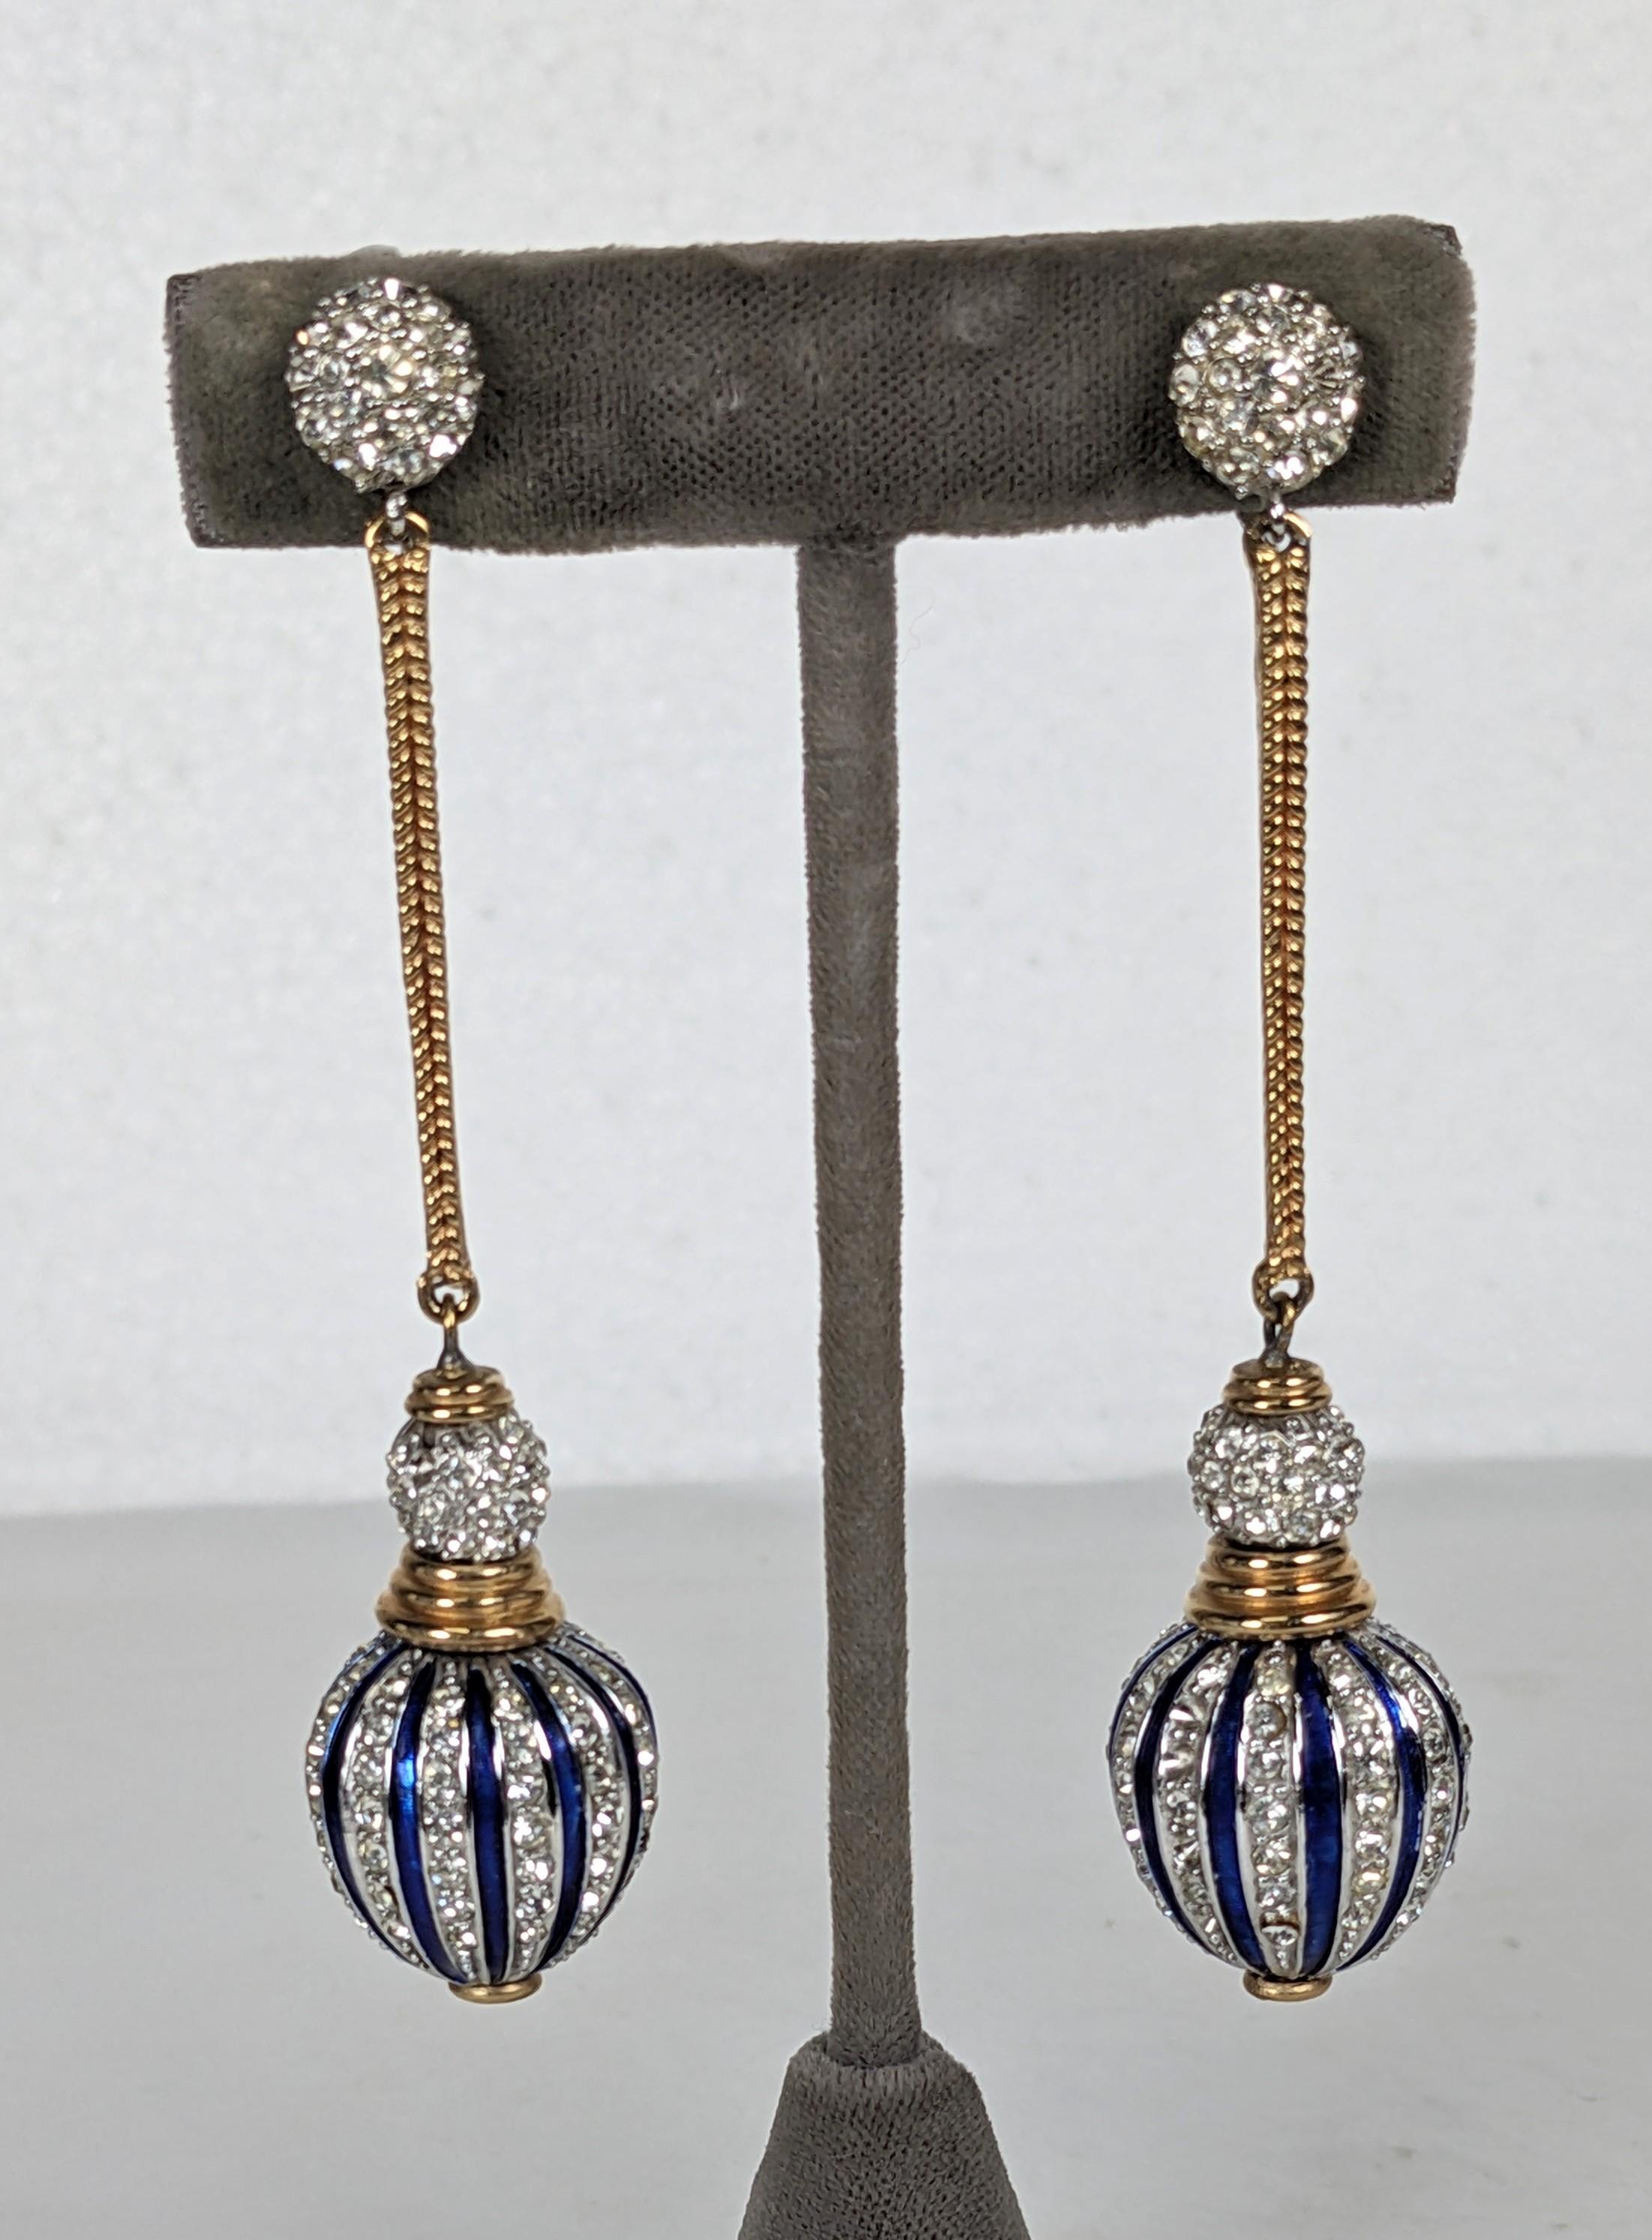 Women's Marcel Boucher Pave and Enamel Lantern Earrings For Sale